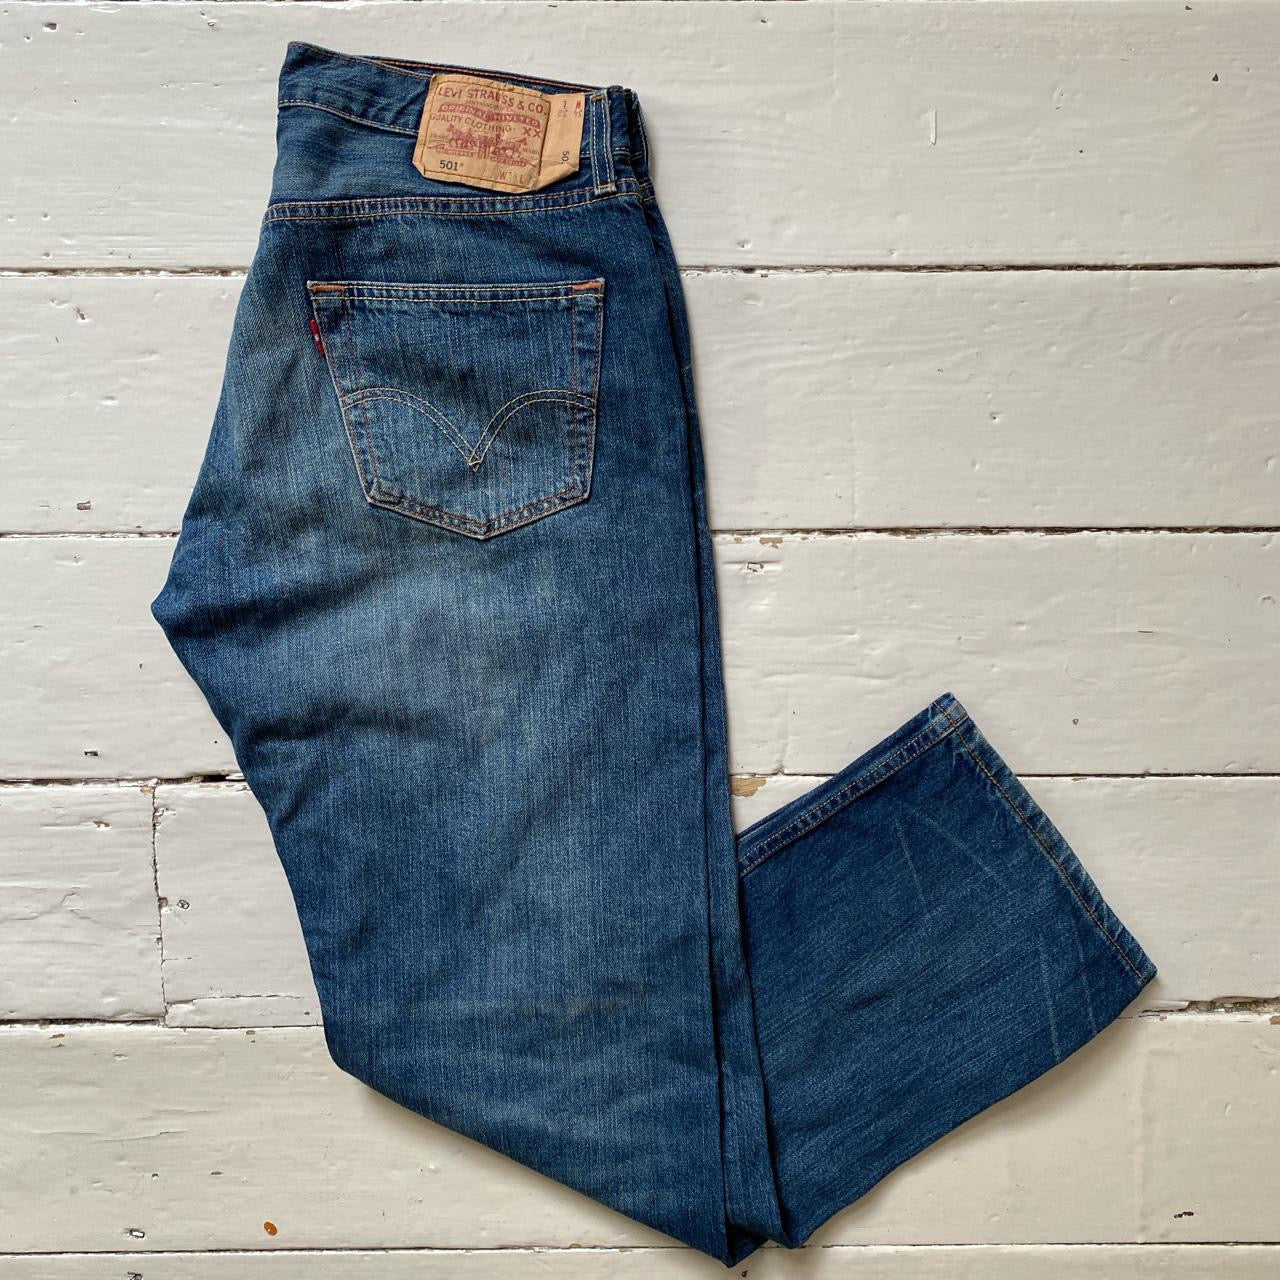 Levis 501 Stonewash Blue Jeans (34/31)